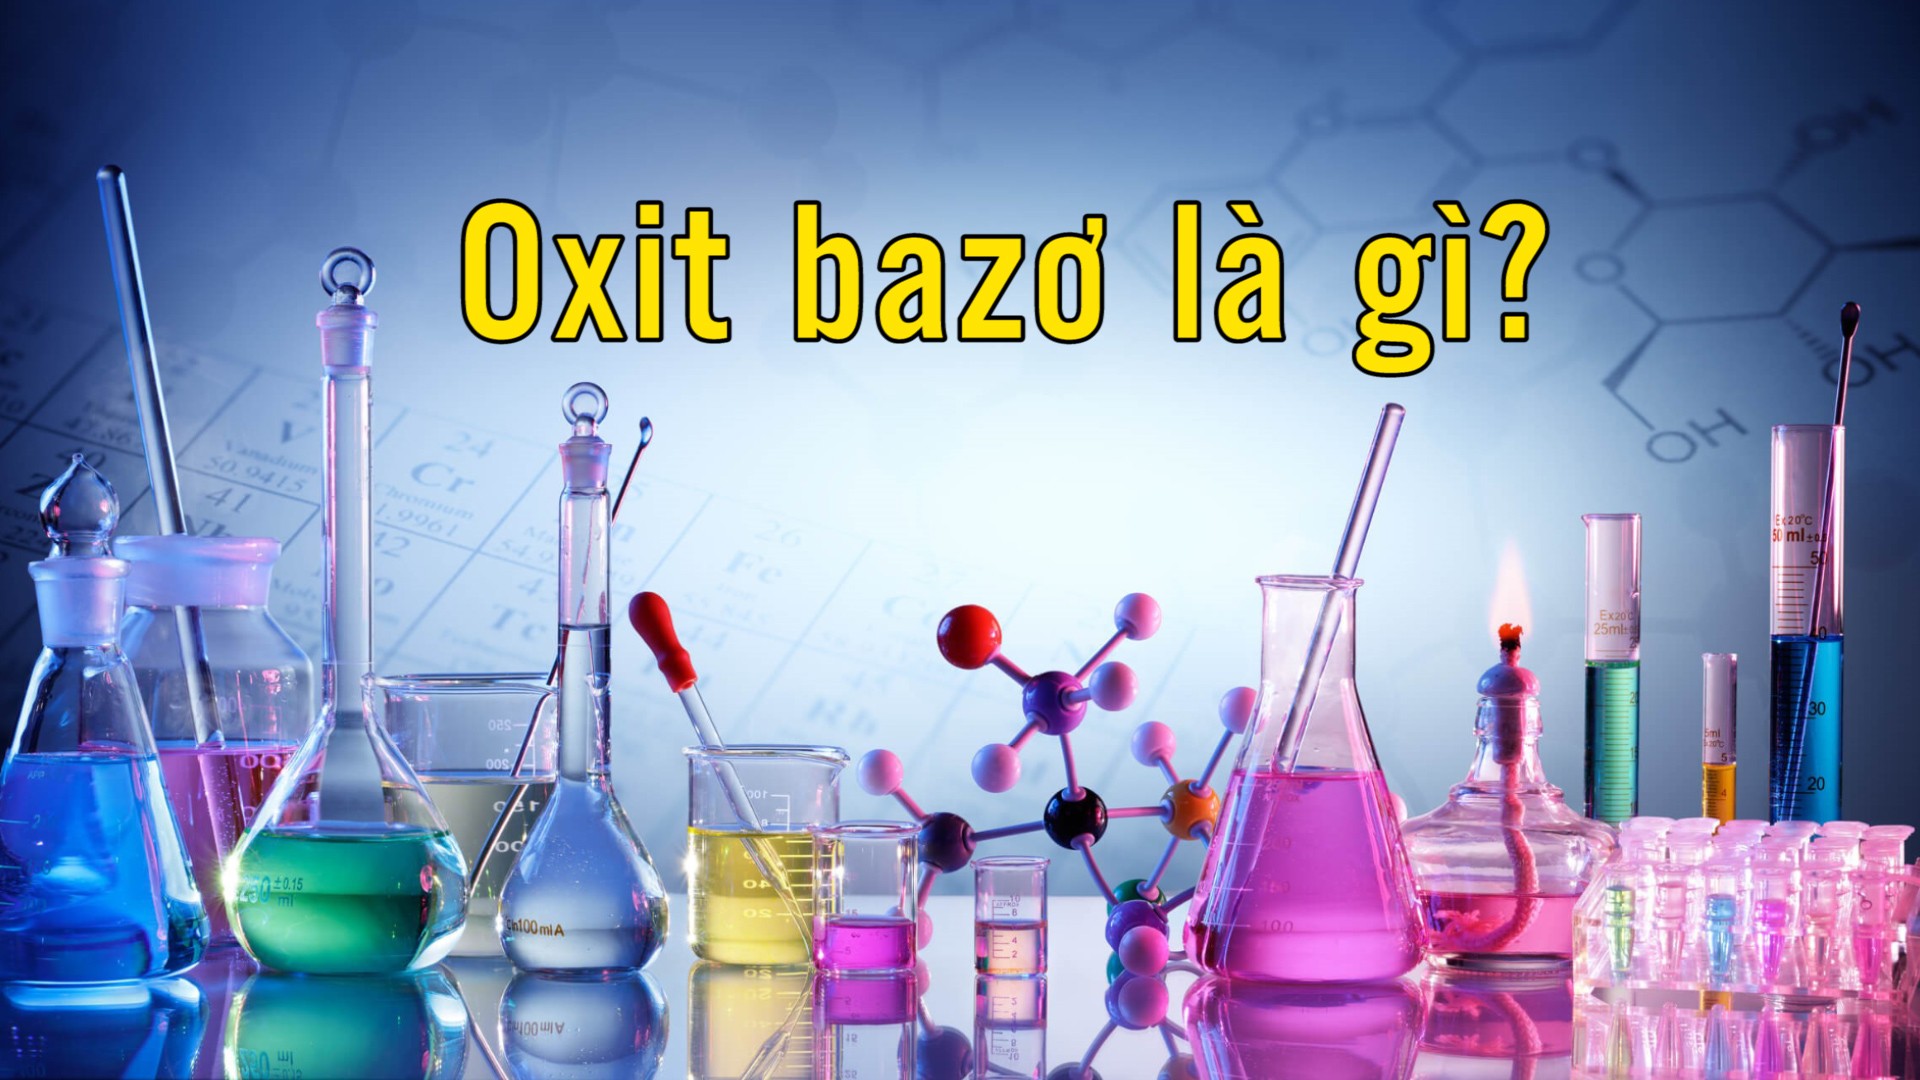 Tổng quan về oxit bazo gồm những chất nào và tính chất hóa học của chúng